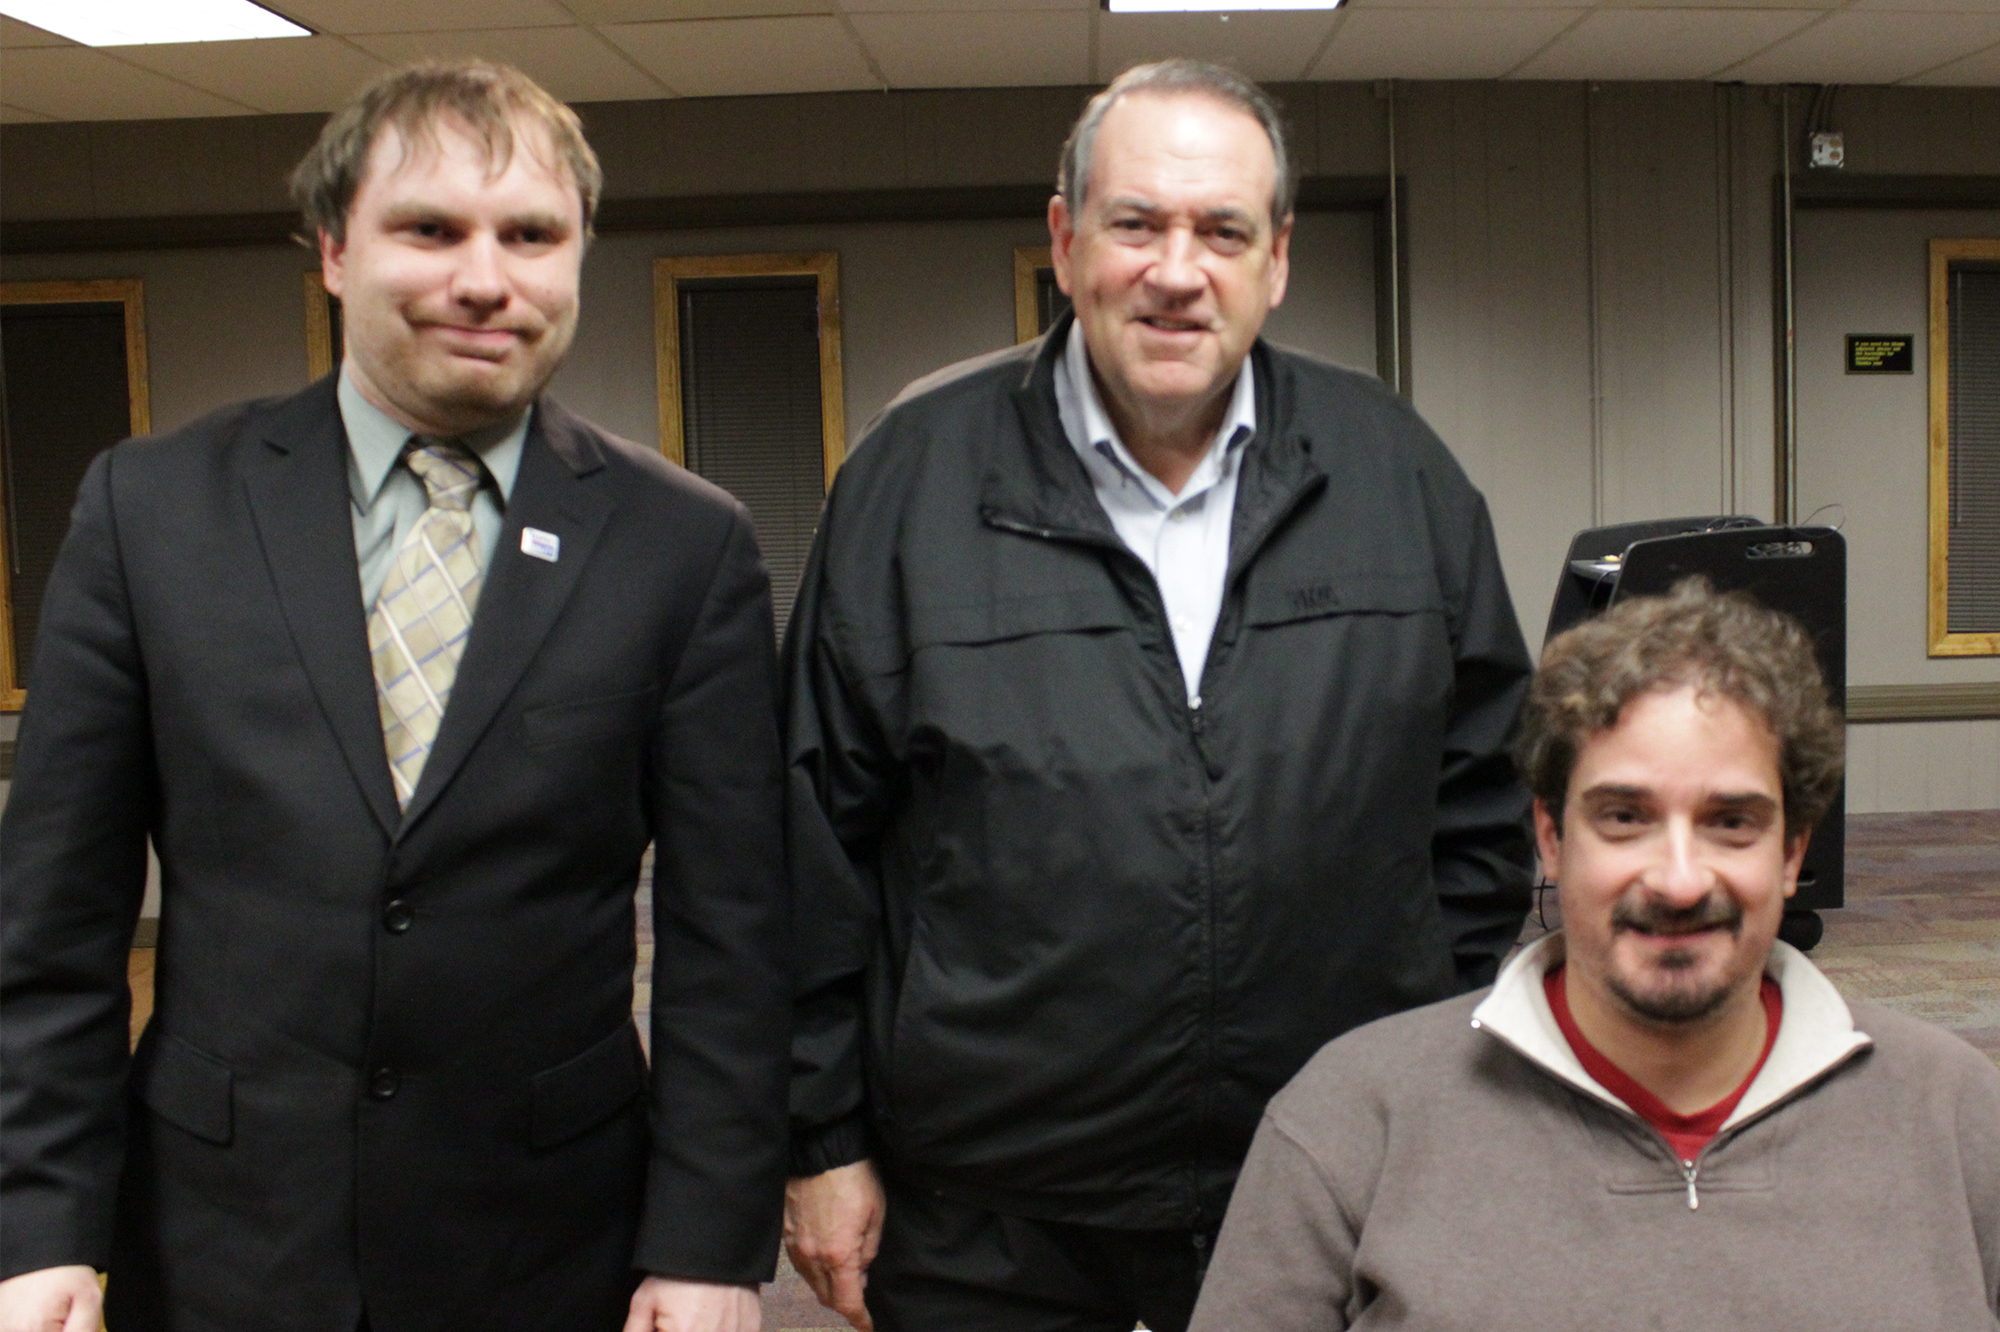 In January, James and Ben met Gov. Mike Huckabee in Iowa.